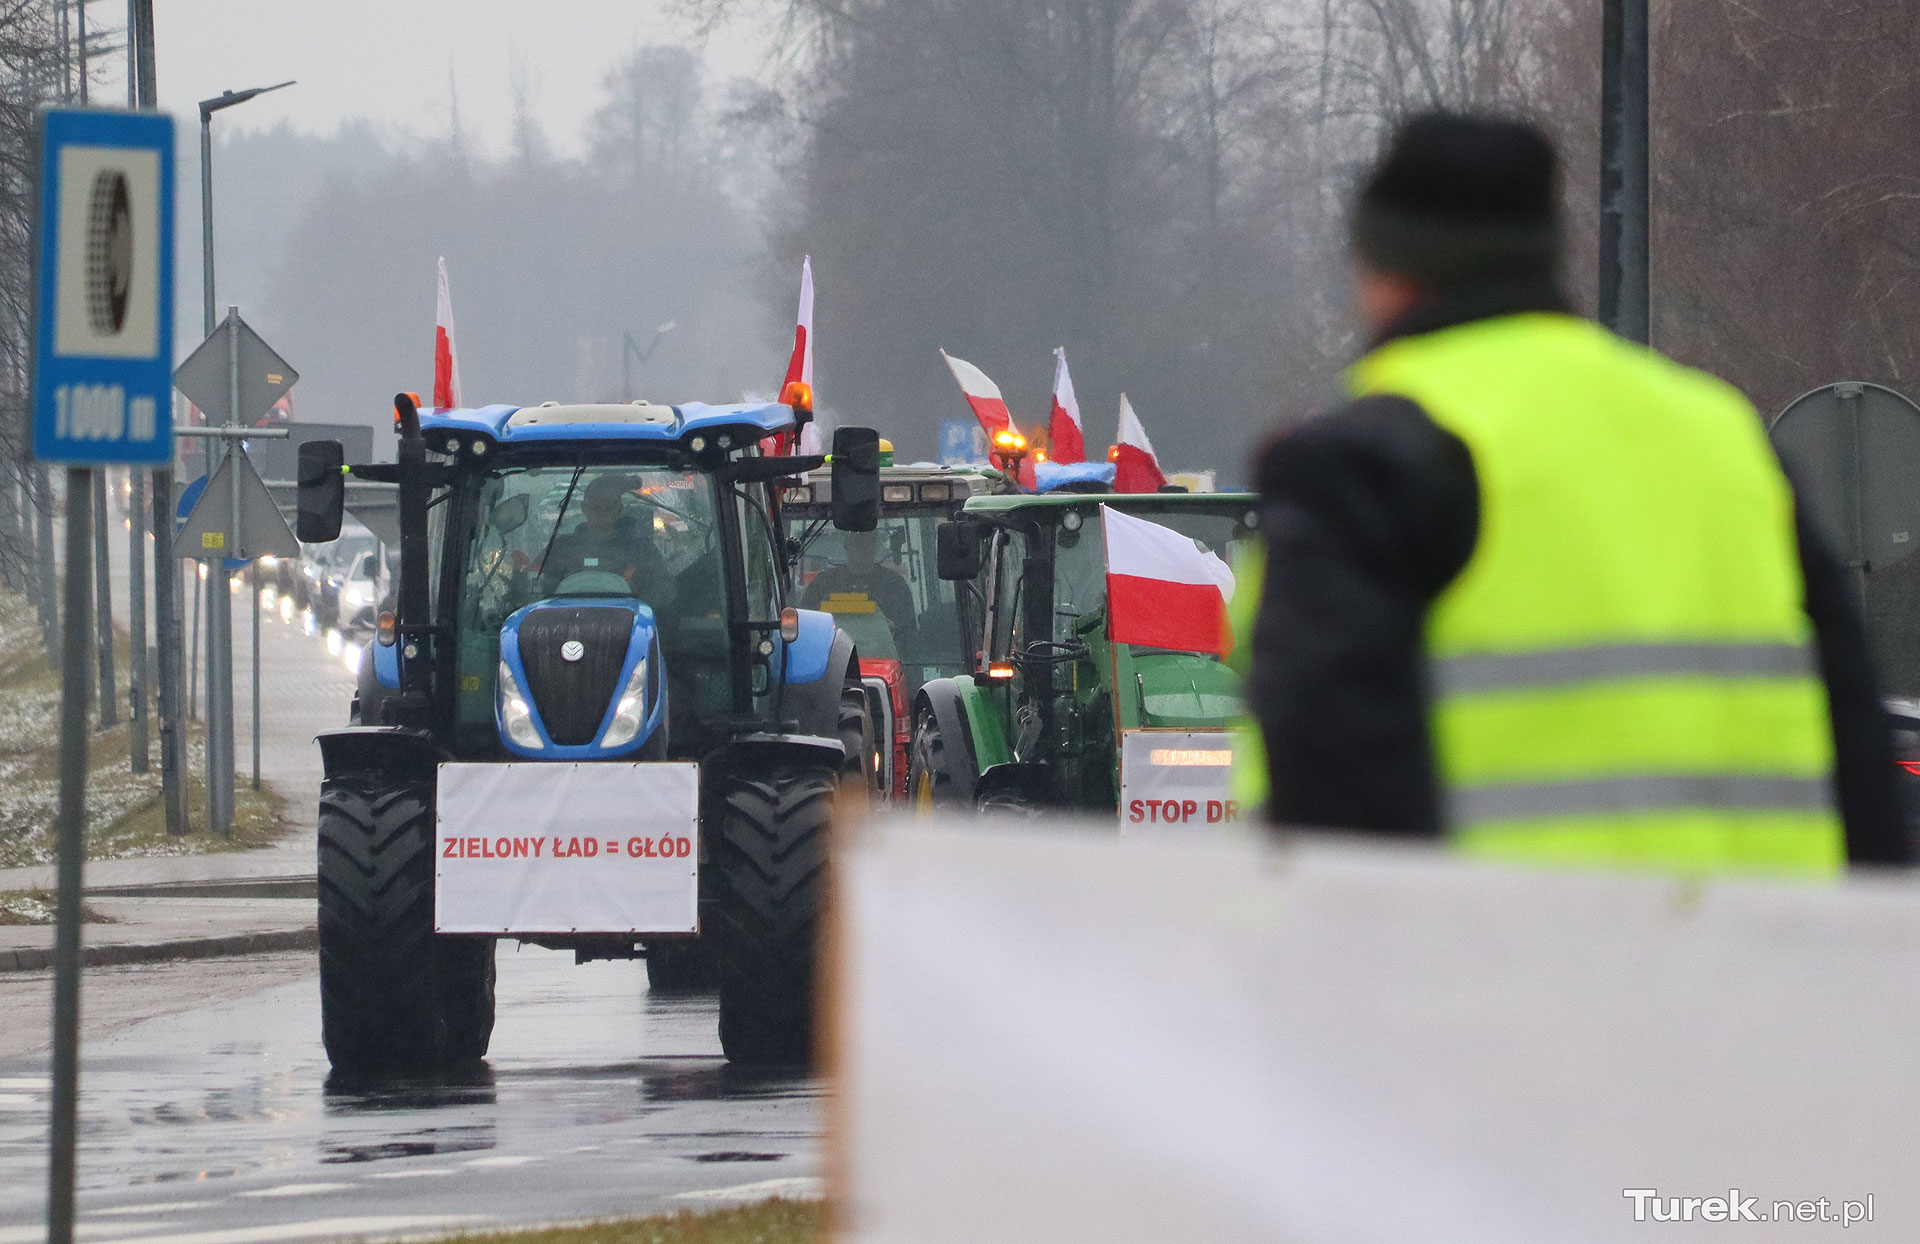 Kolejna blokada ronda Dmowskiego we wtorek. Rolnicze traktory pojawią się przed południem! - Protest rolników w Turku / fot. Archiwum Turek.net.pl